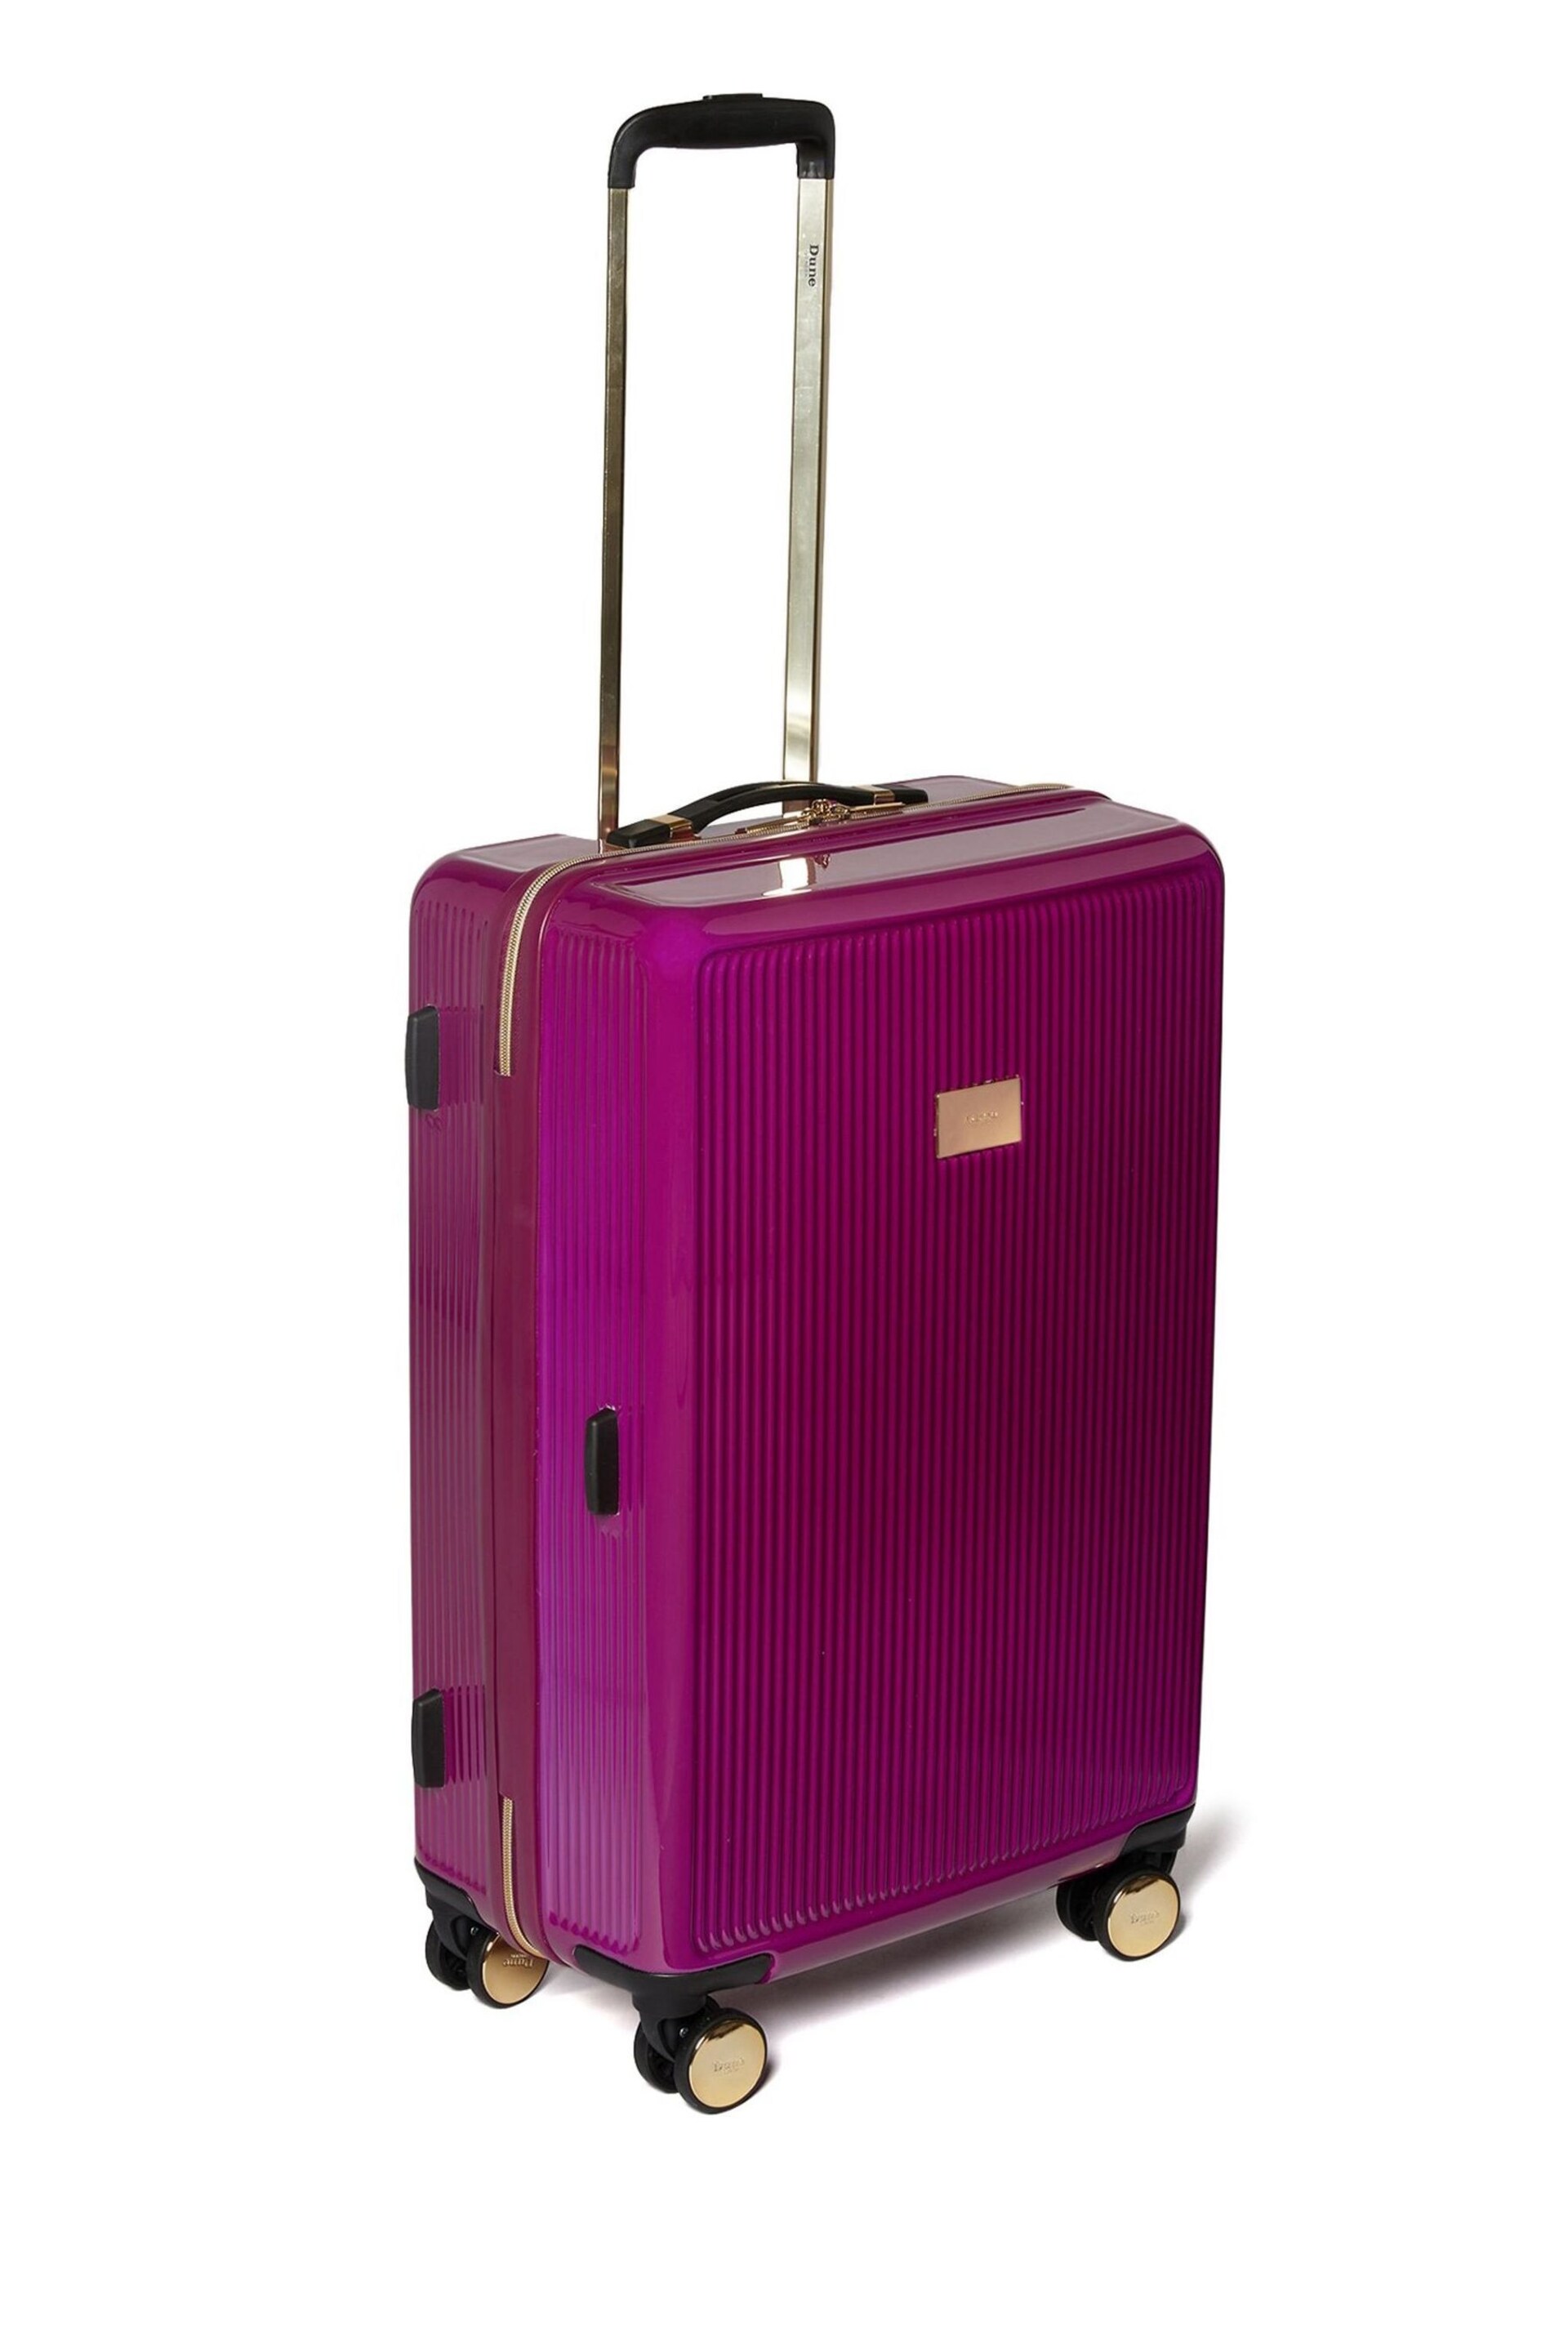 Dune London Pink Olive 67cm Medium Suitcase - Image 2 of 3